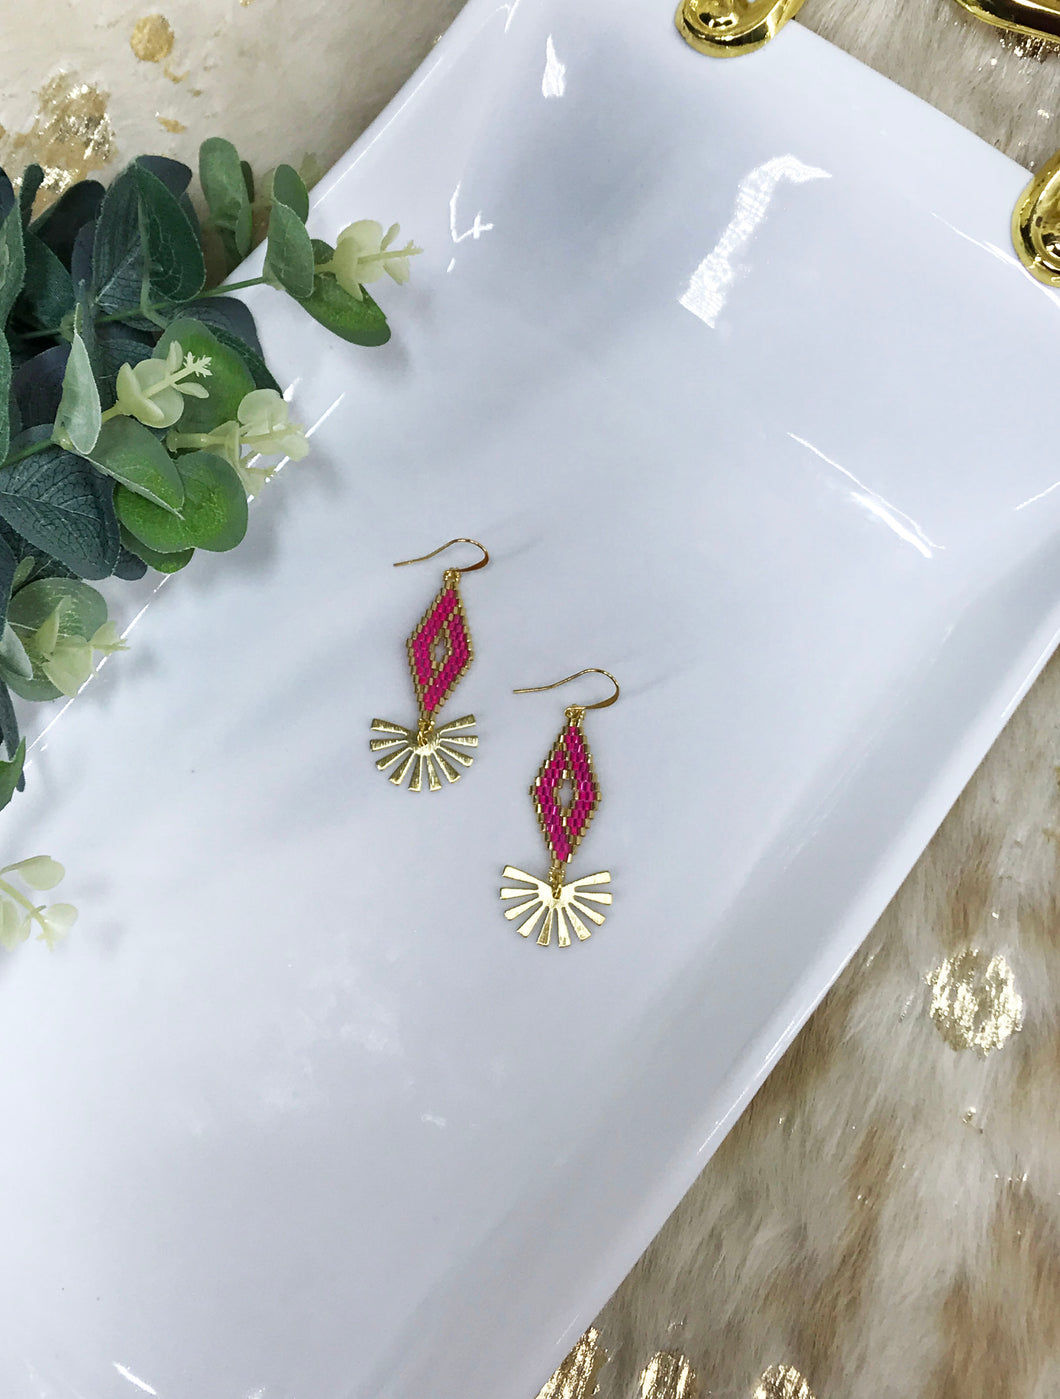 Hot Pink & Gold Pendant Earrings - E19-4407